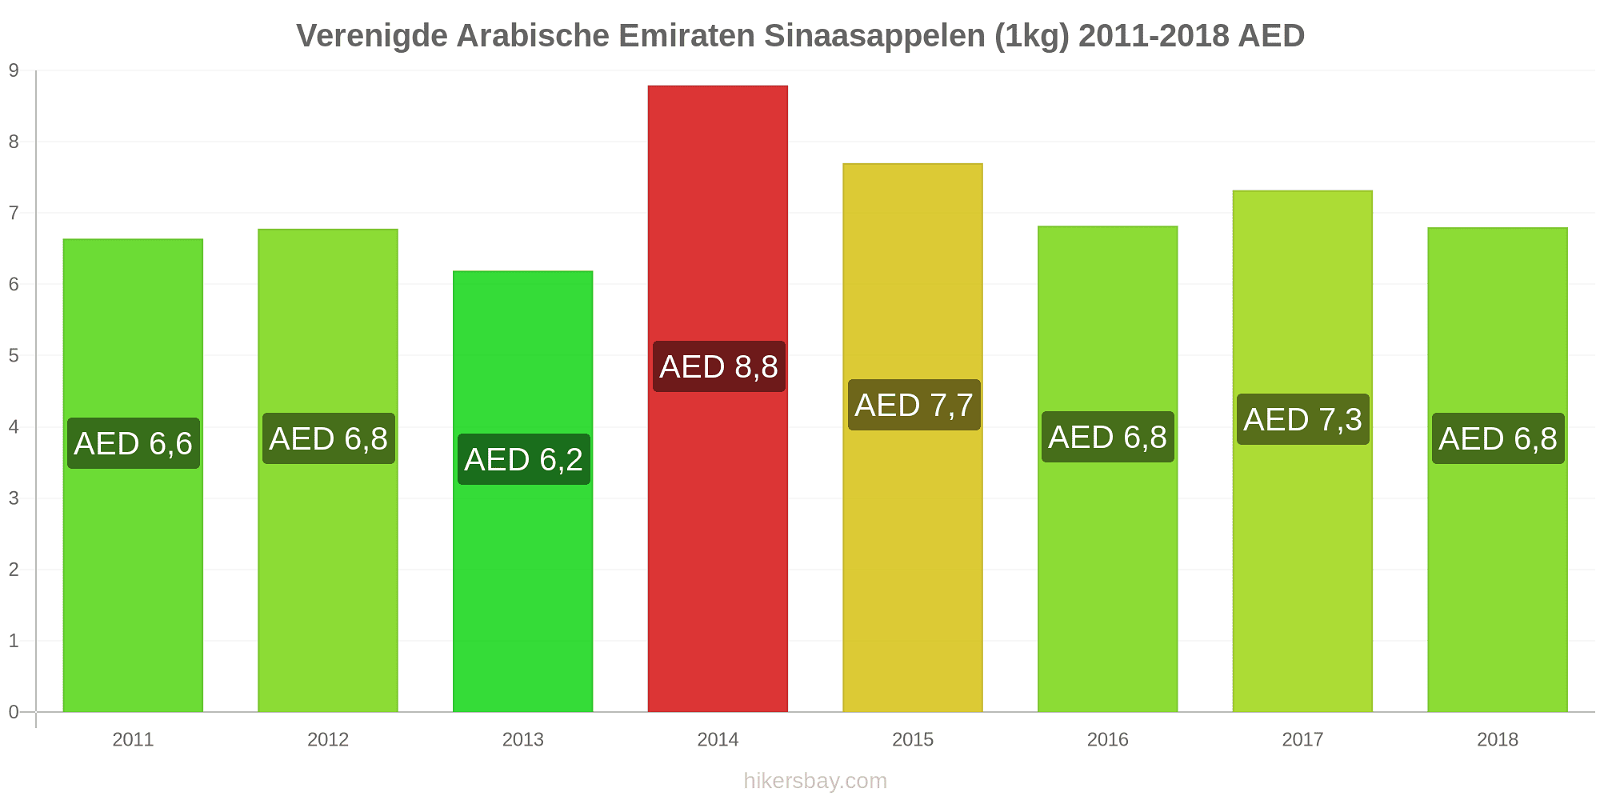 Verenigde Arabische Emiraten prijswijzigingen Sinaasappels (1kg) hikersbay.com